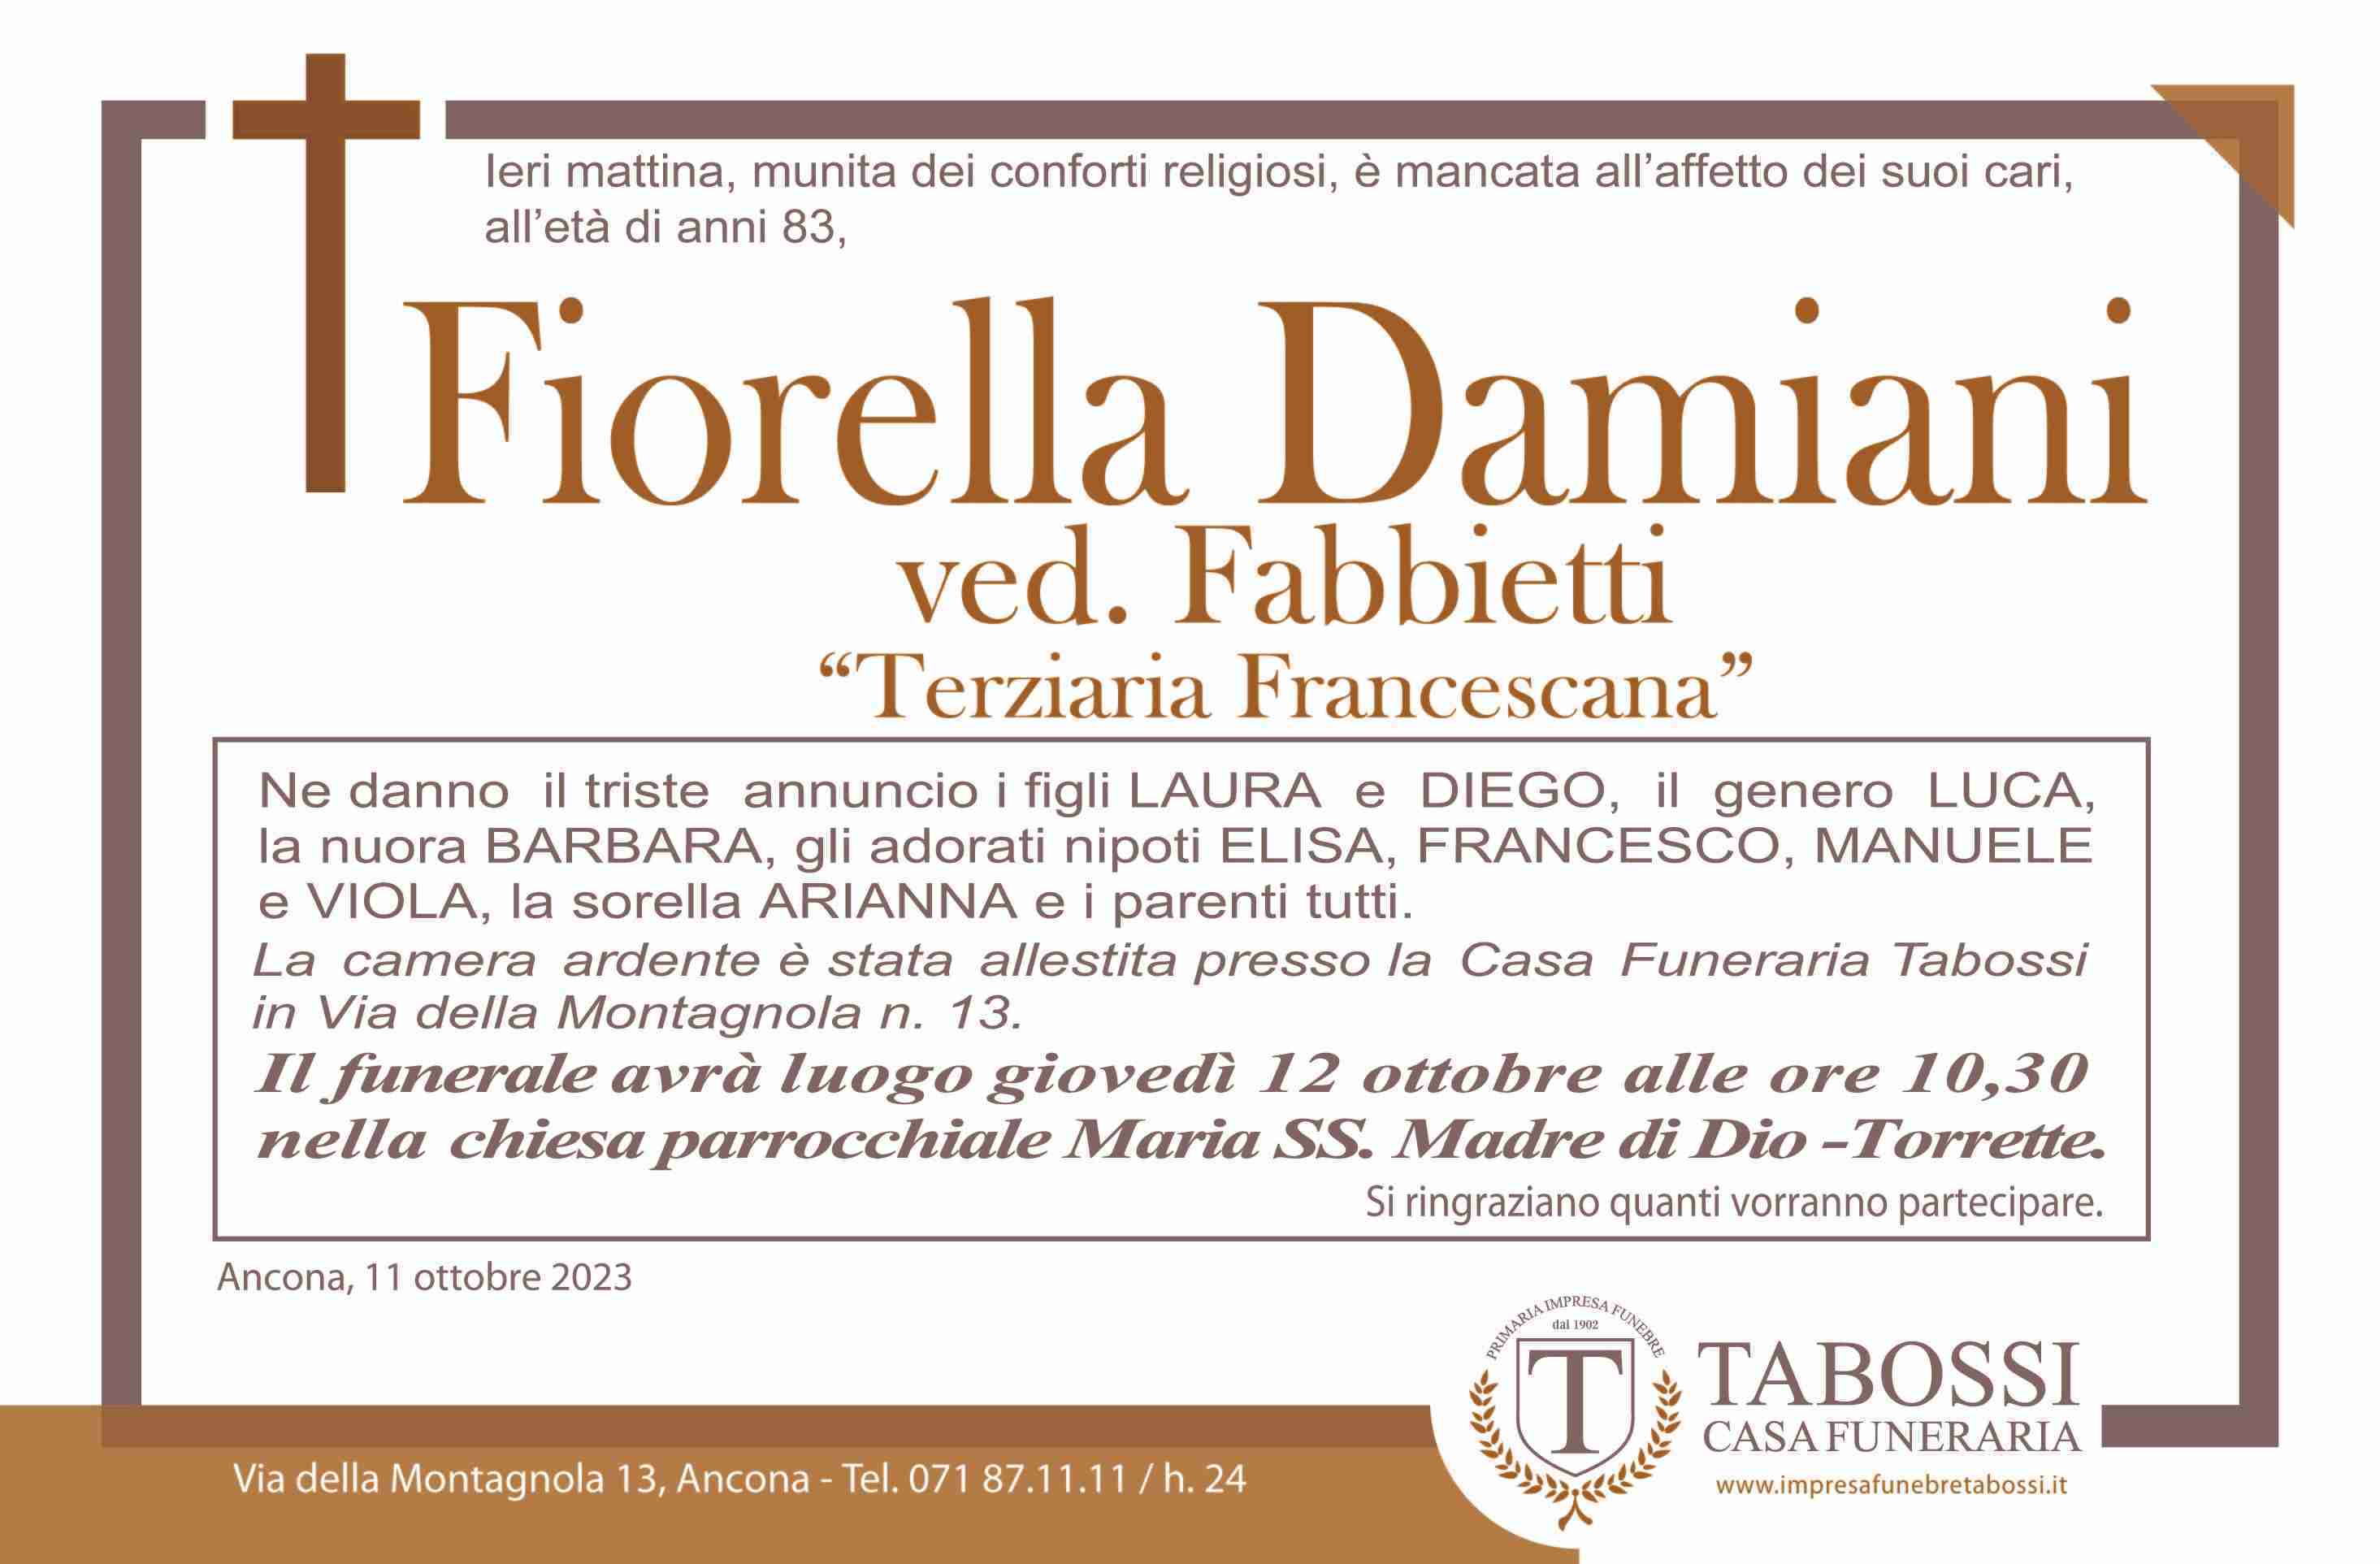 Fiorella Damiani